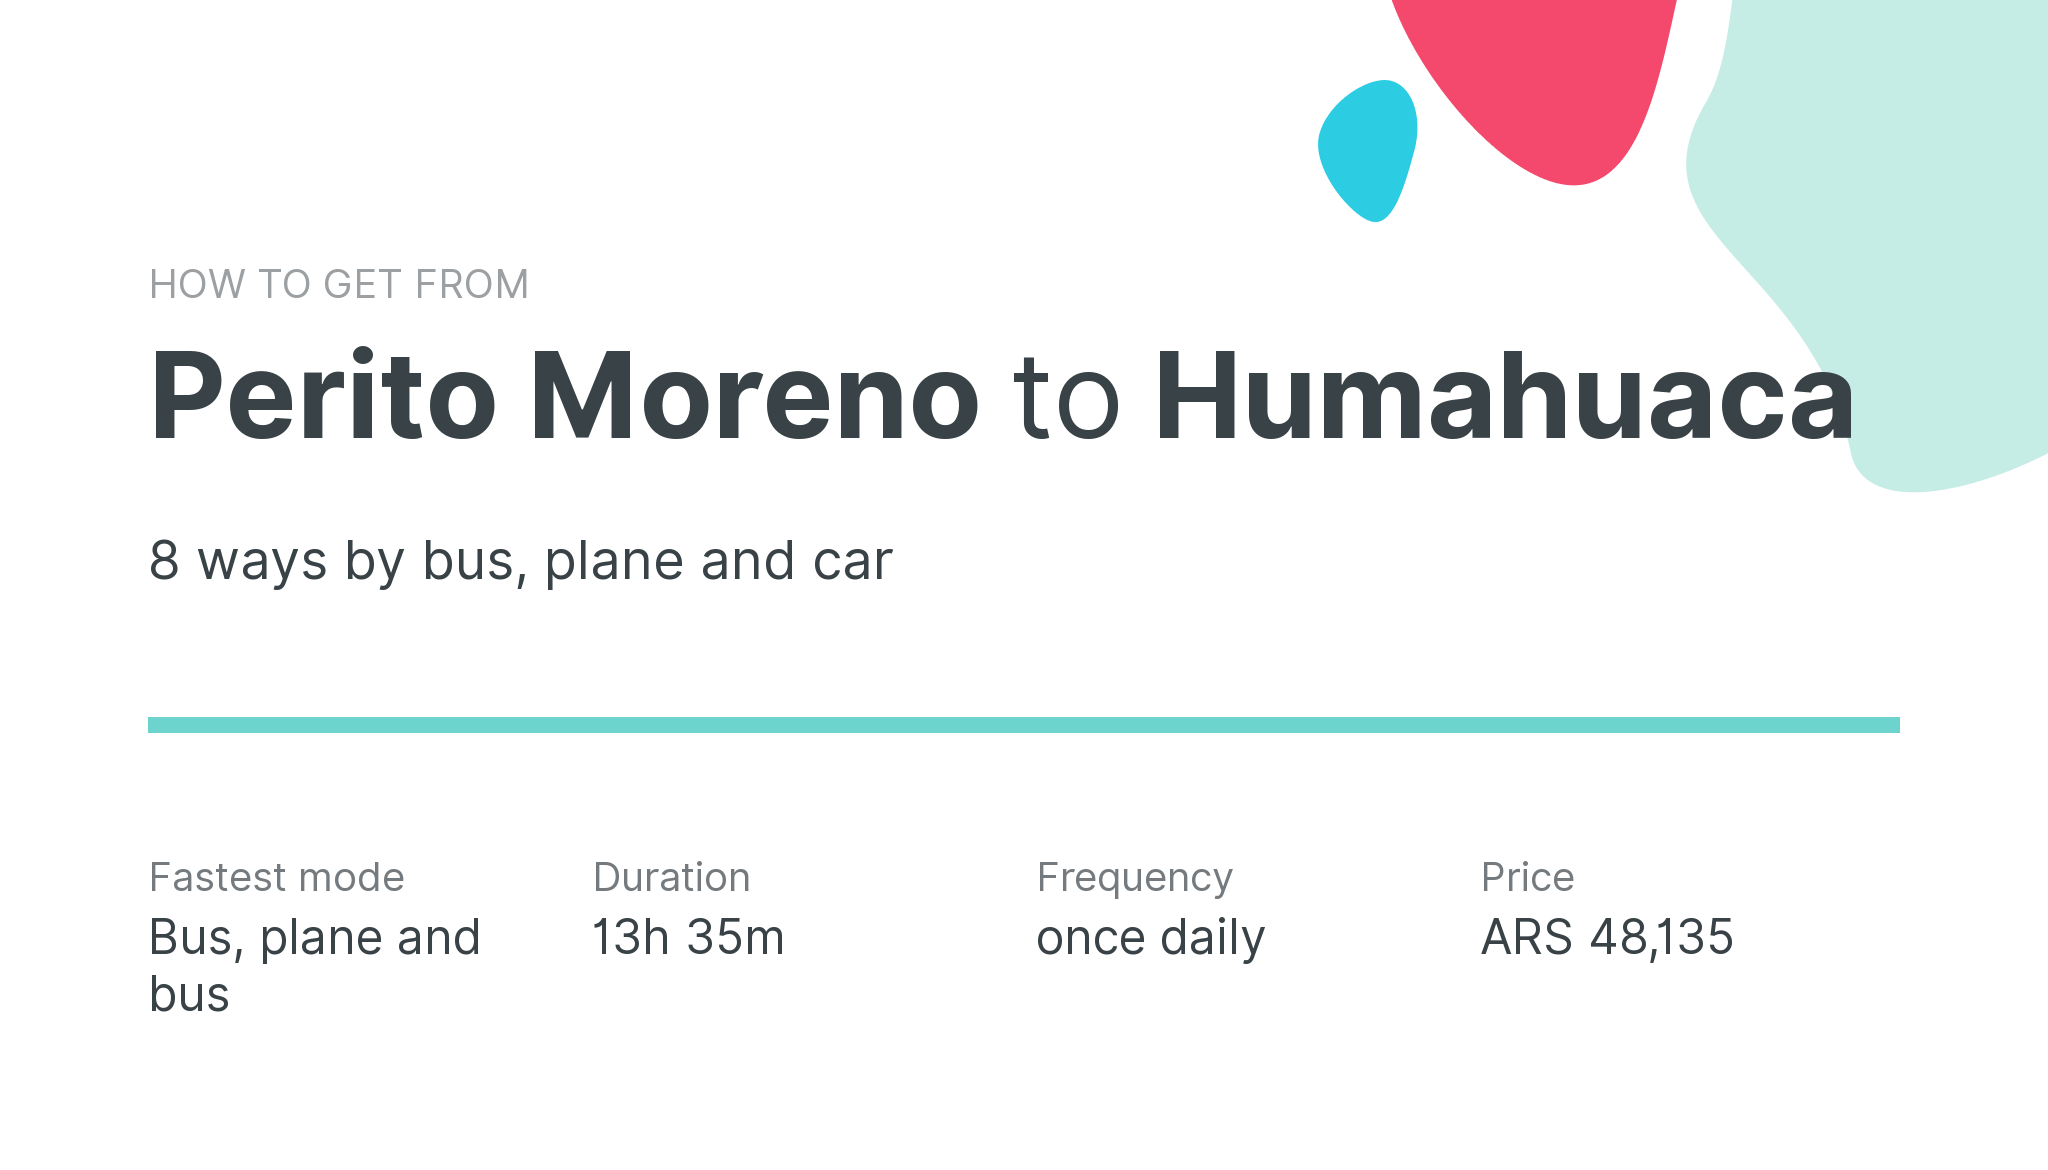 How do I get from Perito Moreno to Humahuaca